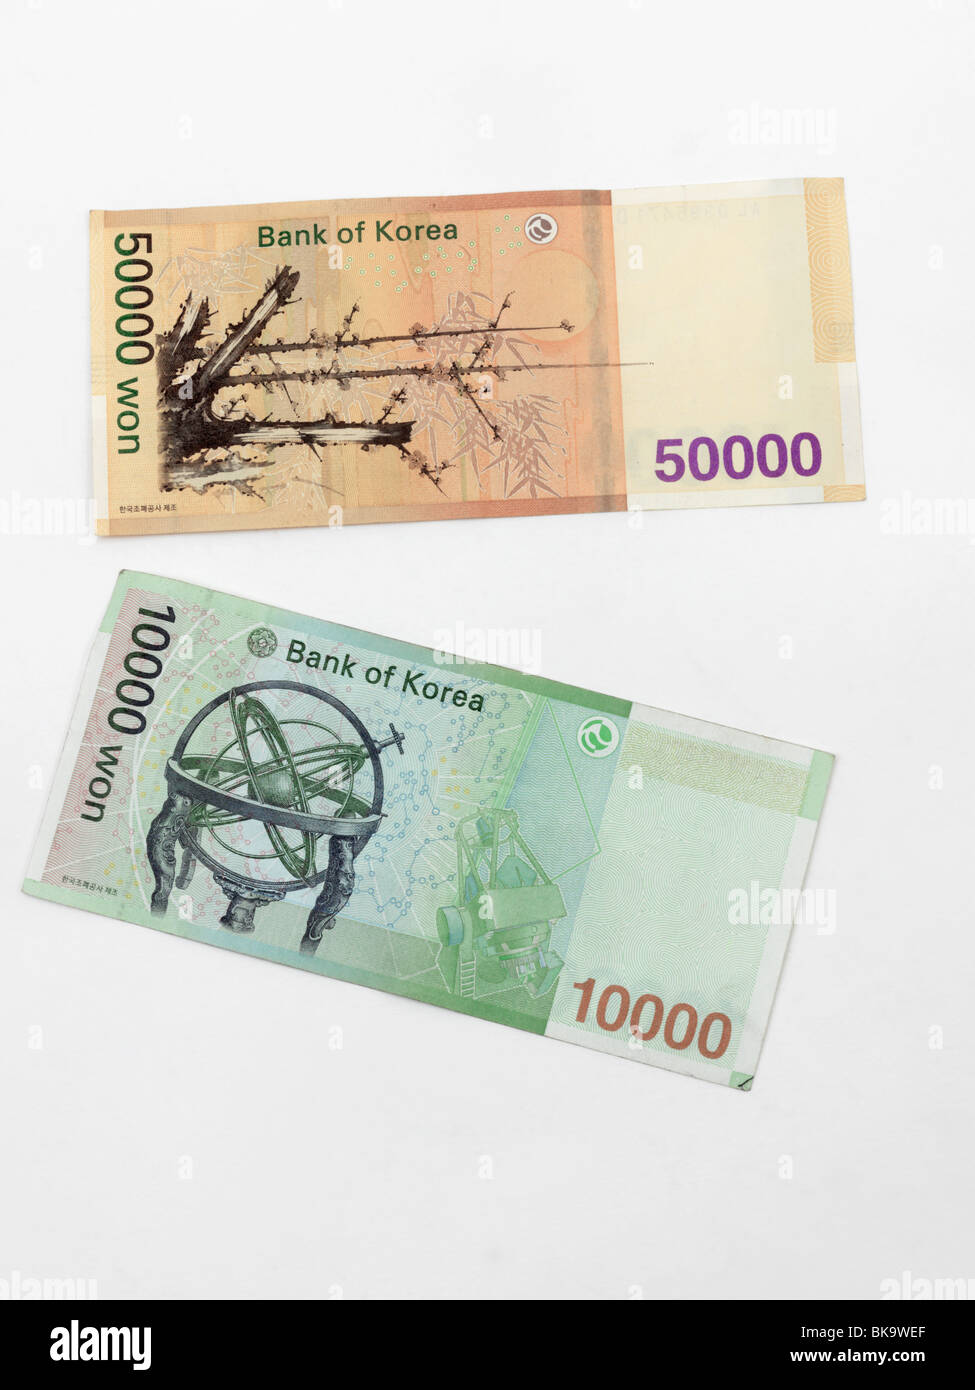 South Korean Banknotes 50000 Won And 10000 Won Stock Photo